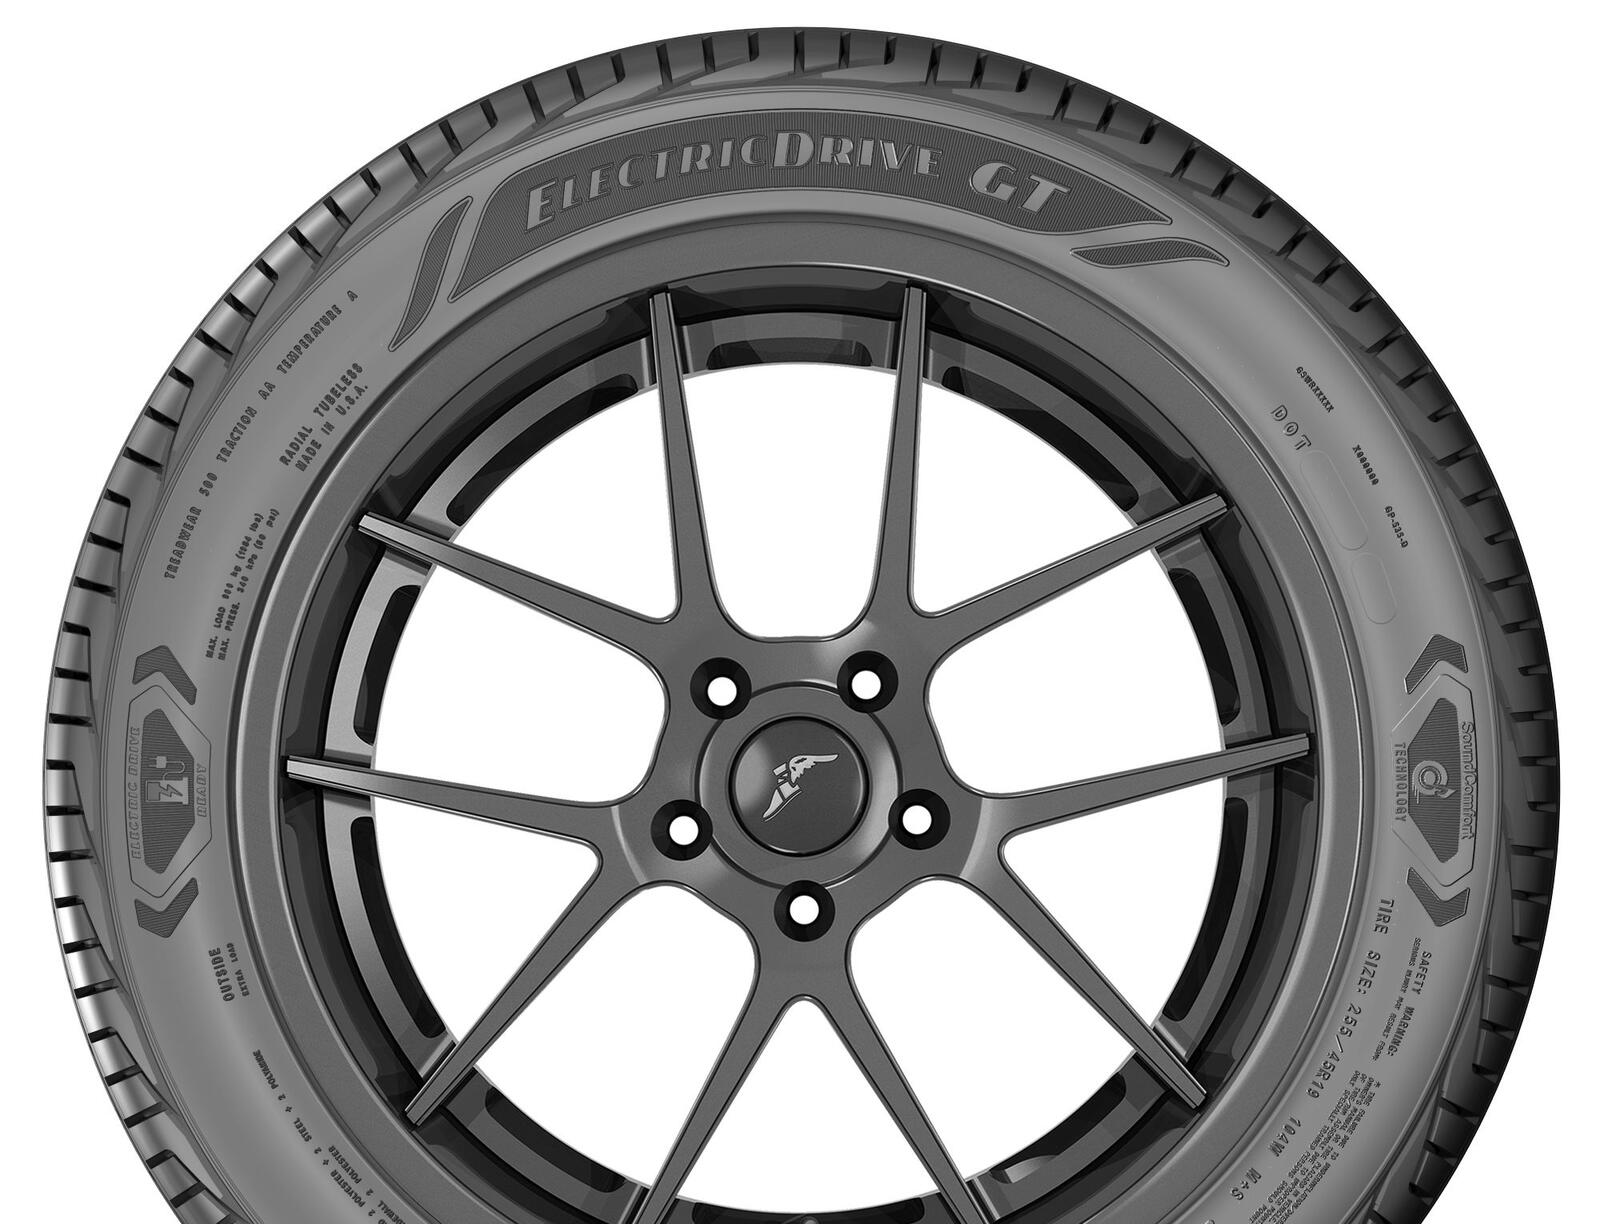 Die Goodyear Tire & Rubber Company hat die Einführung des neuen ElectricDrive GT bekannt gegeben. 